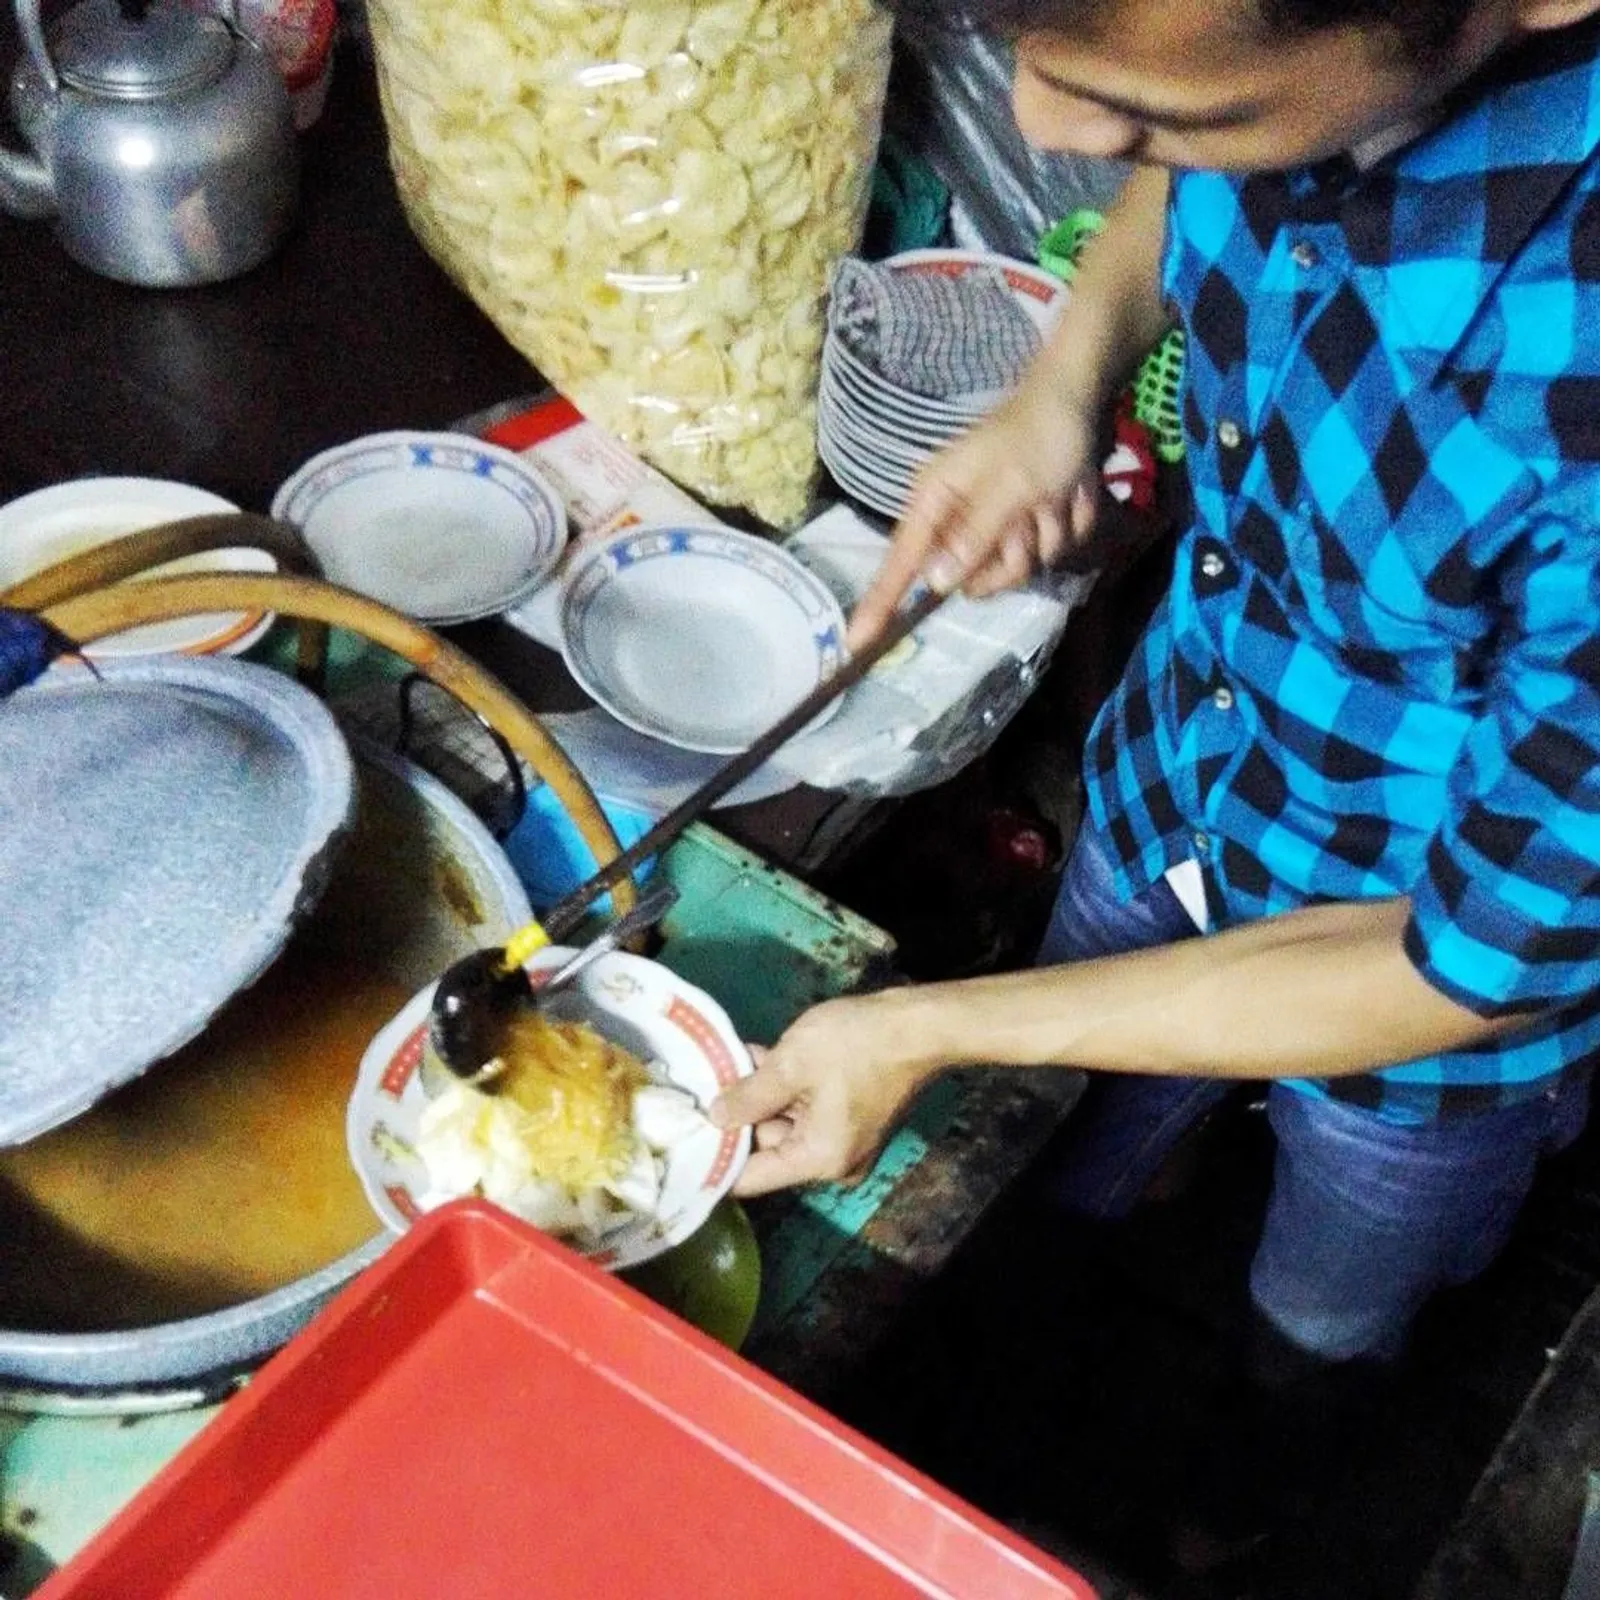 Wisata Kuliner Kaki Lima saat Malam Hari di Bogor Biar Romantis